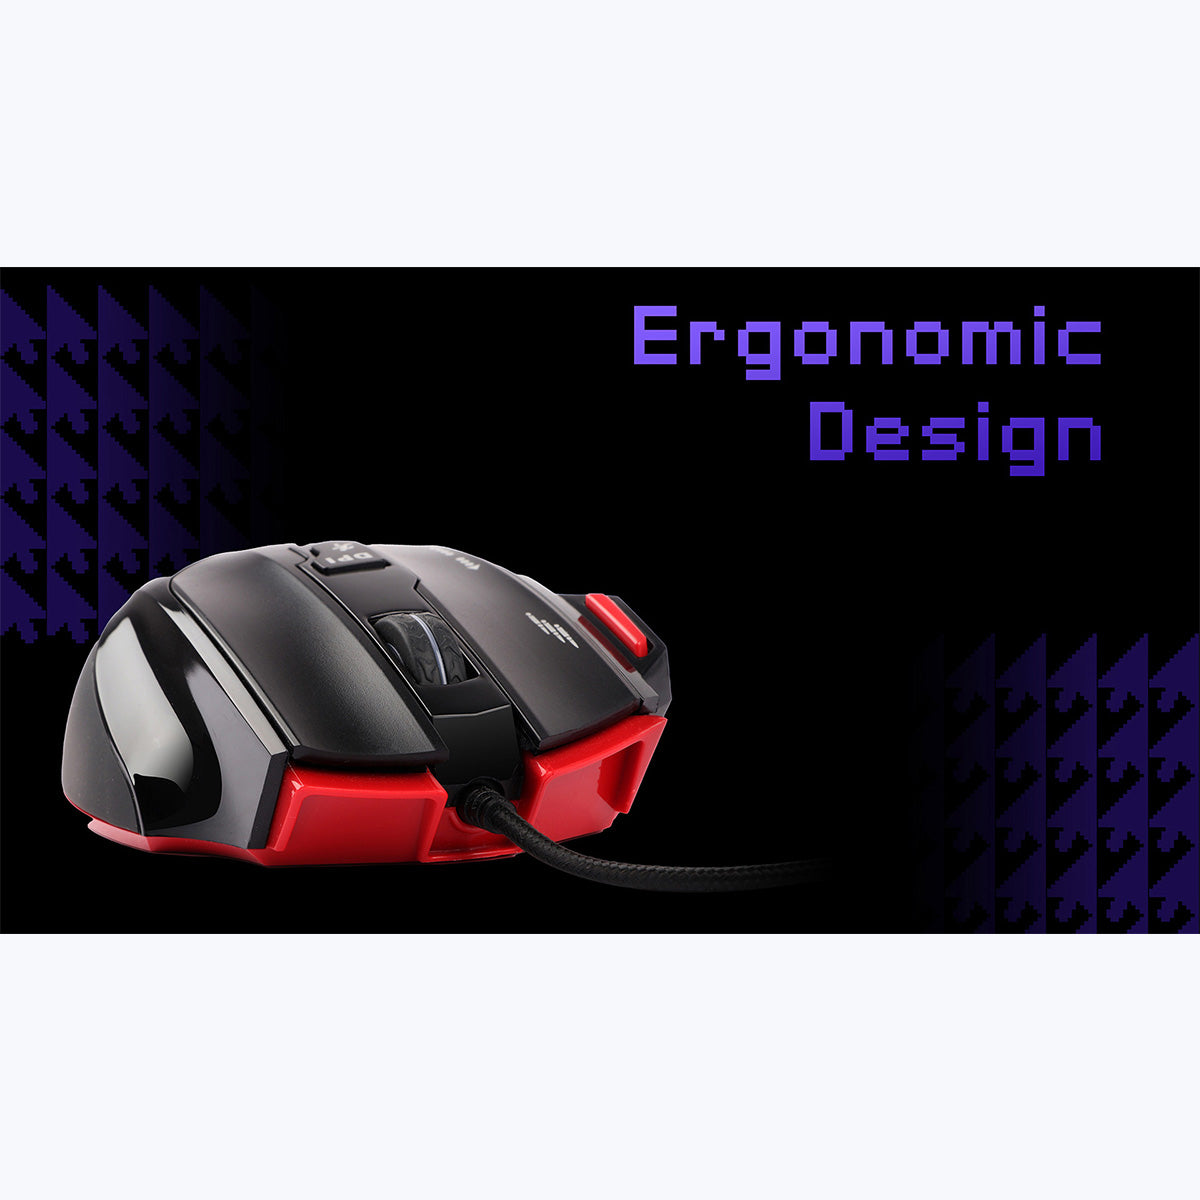 Zeb-Groza - Premium Gaming Mouse - Zebronics